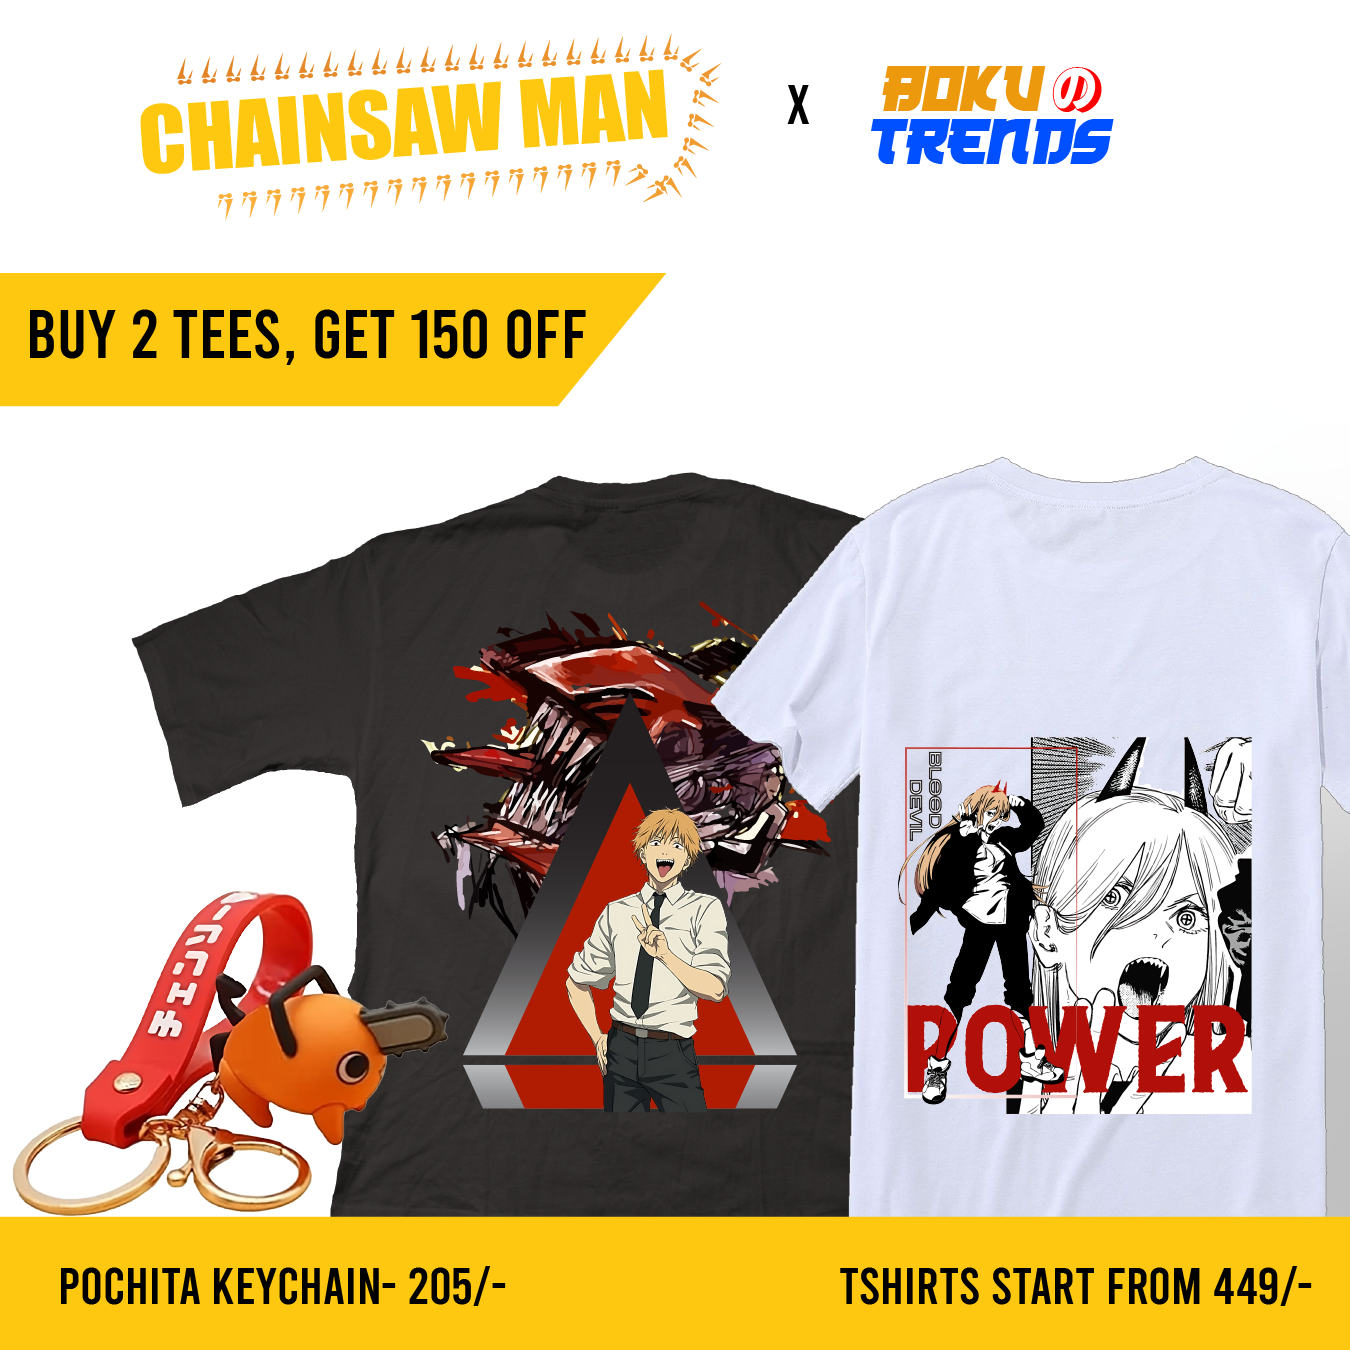 Shop Our Chain Saw Man Anime Merch